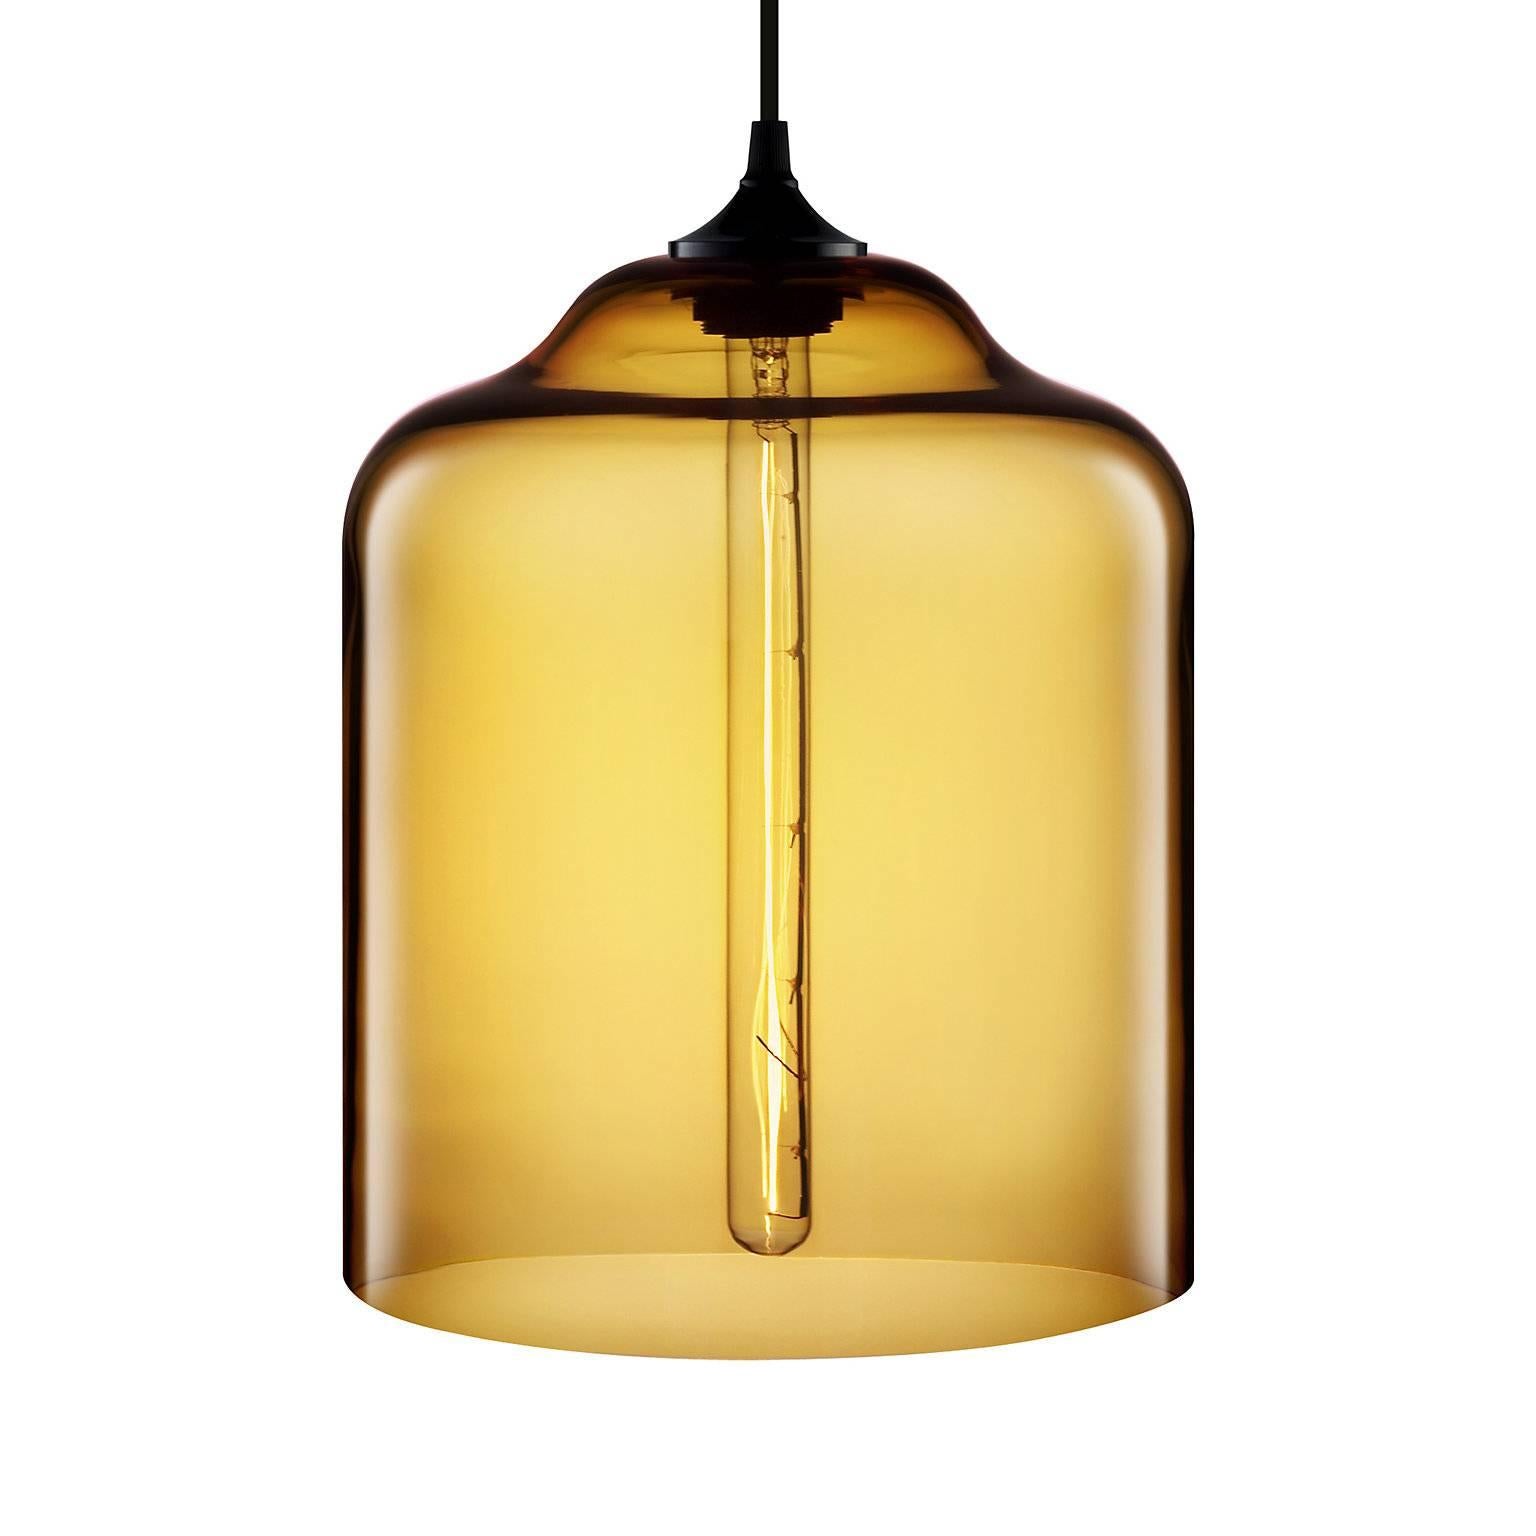 Die Glaskanne Bell und ihr schlankeres Pendant Bella zelebrieren das ikonische Design und werfen herrliche Lichtstrahlen aus, die ebenso warm wie einladend sind. Jede einzelne Glas-Pendelleuchte von Niche wird von echten Menschen in einem